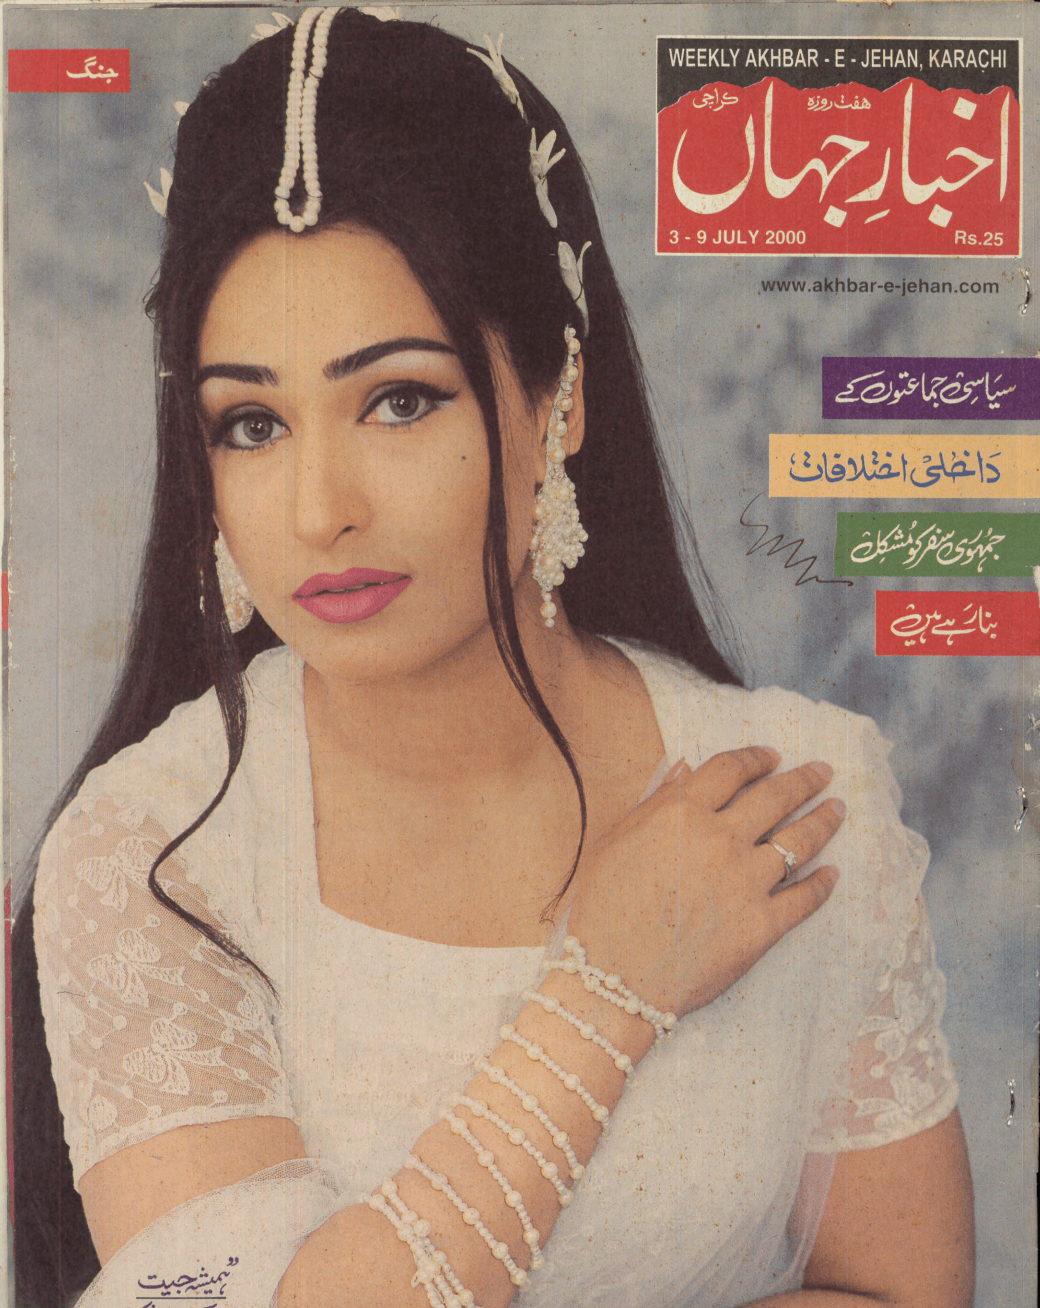 Akhbar-e-Jahan (Jul 3, 2000) - KHAJISTAN™